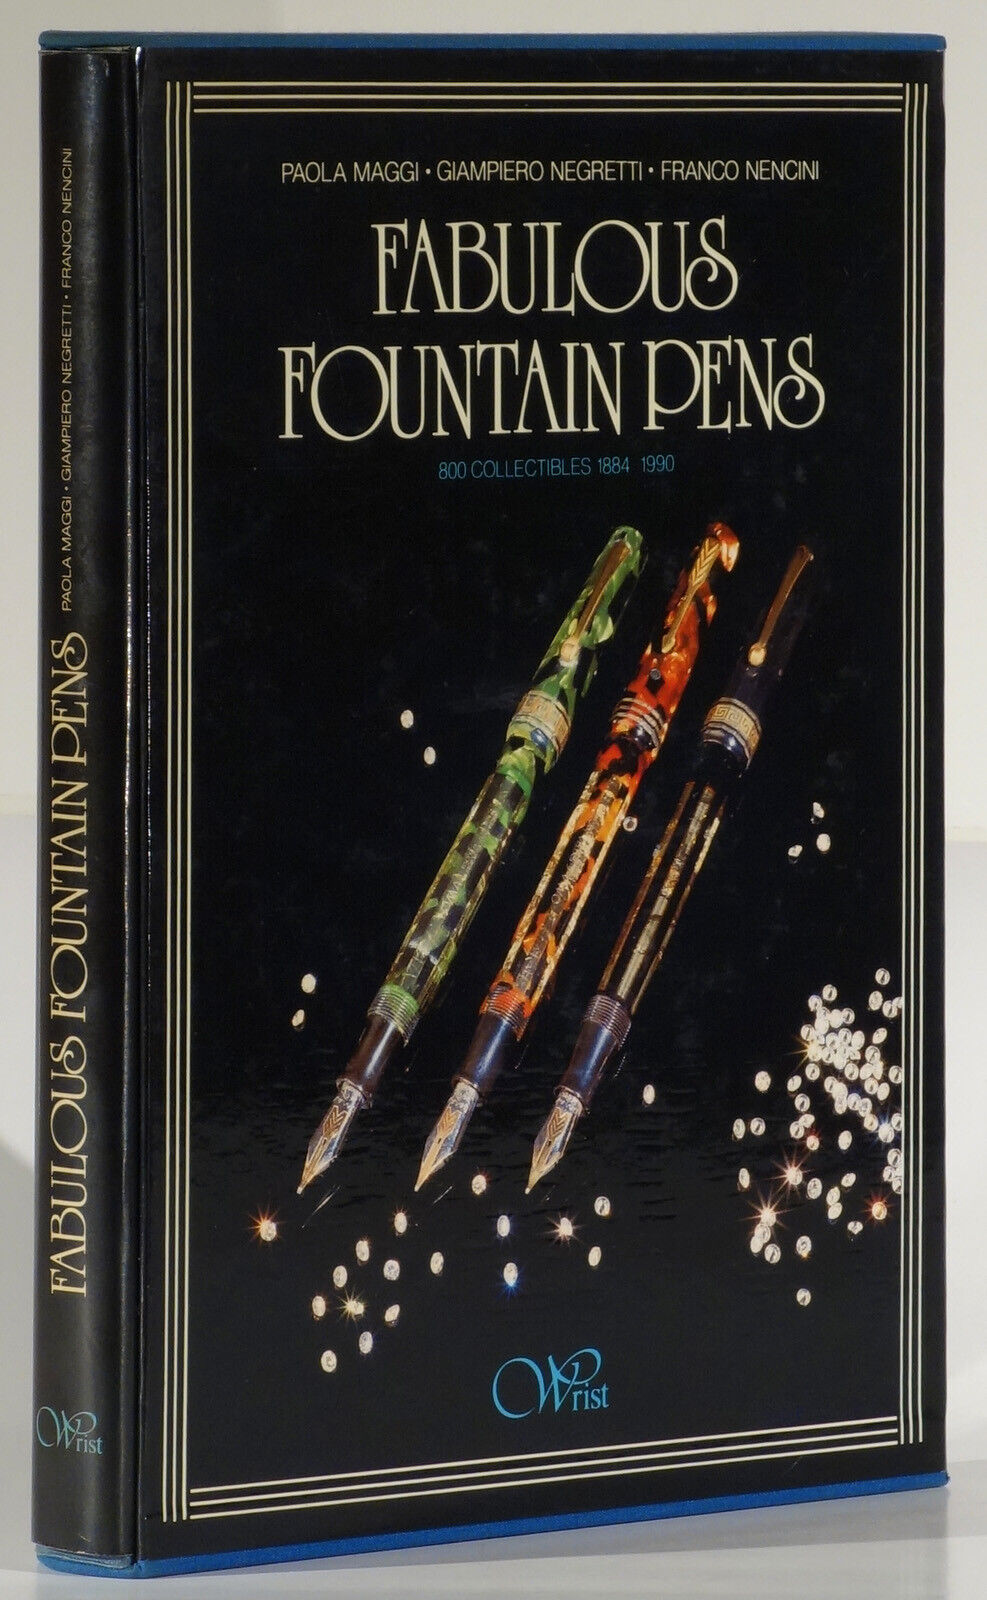 Fabulous Fountain Pens 1990 with prices Maggi/Negretti/Nencini